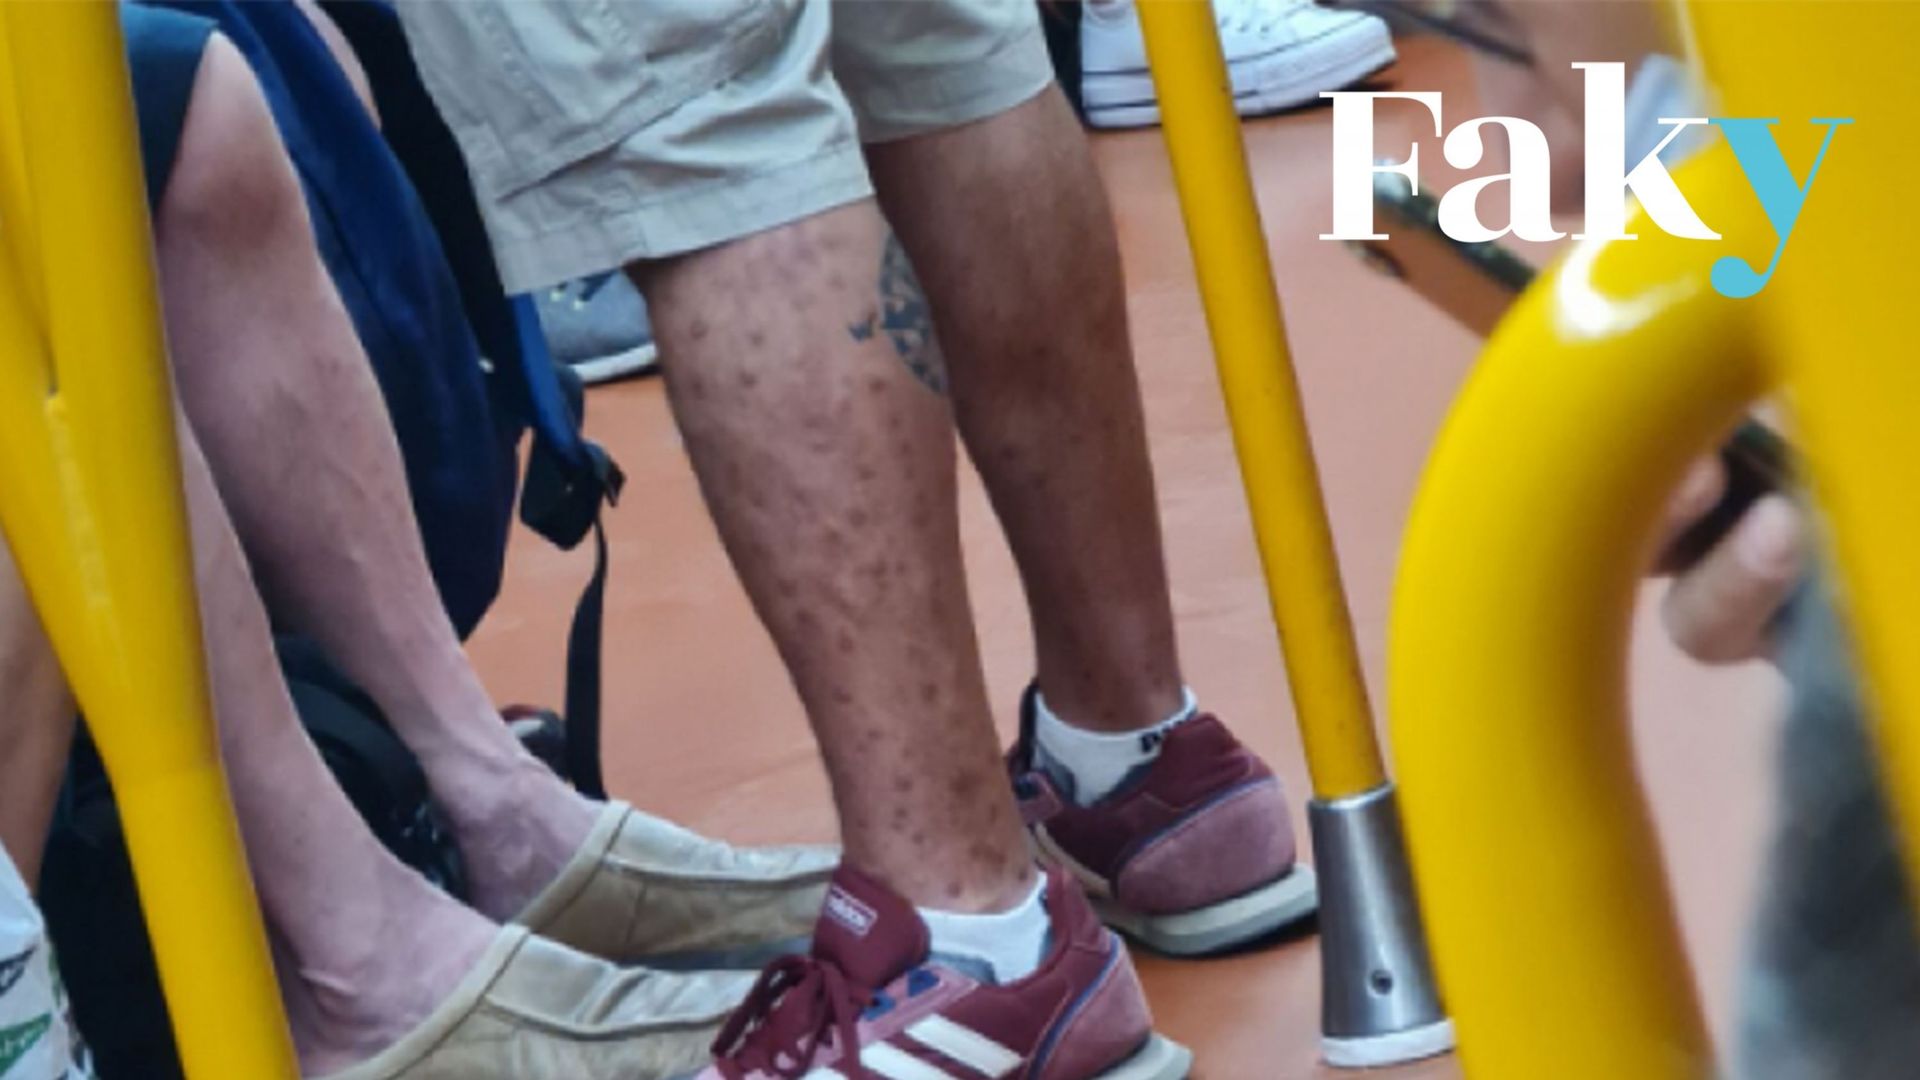 Photographie publiée sur Twitter d’un homme dont les jambes sont couvertes de boutons, dans le métro de Madrid.